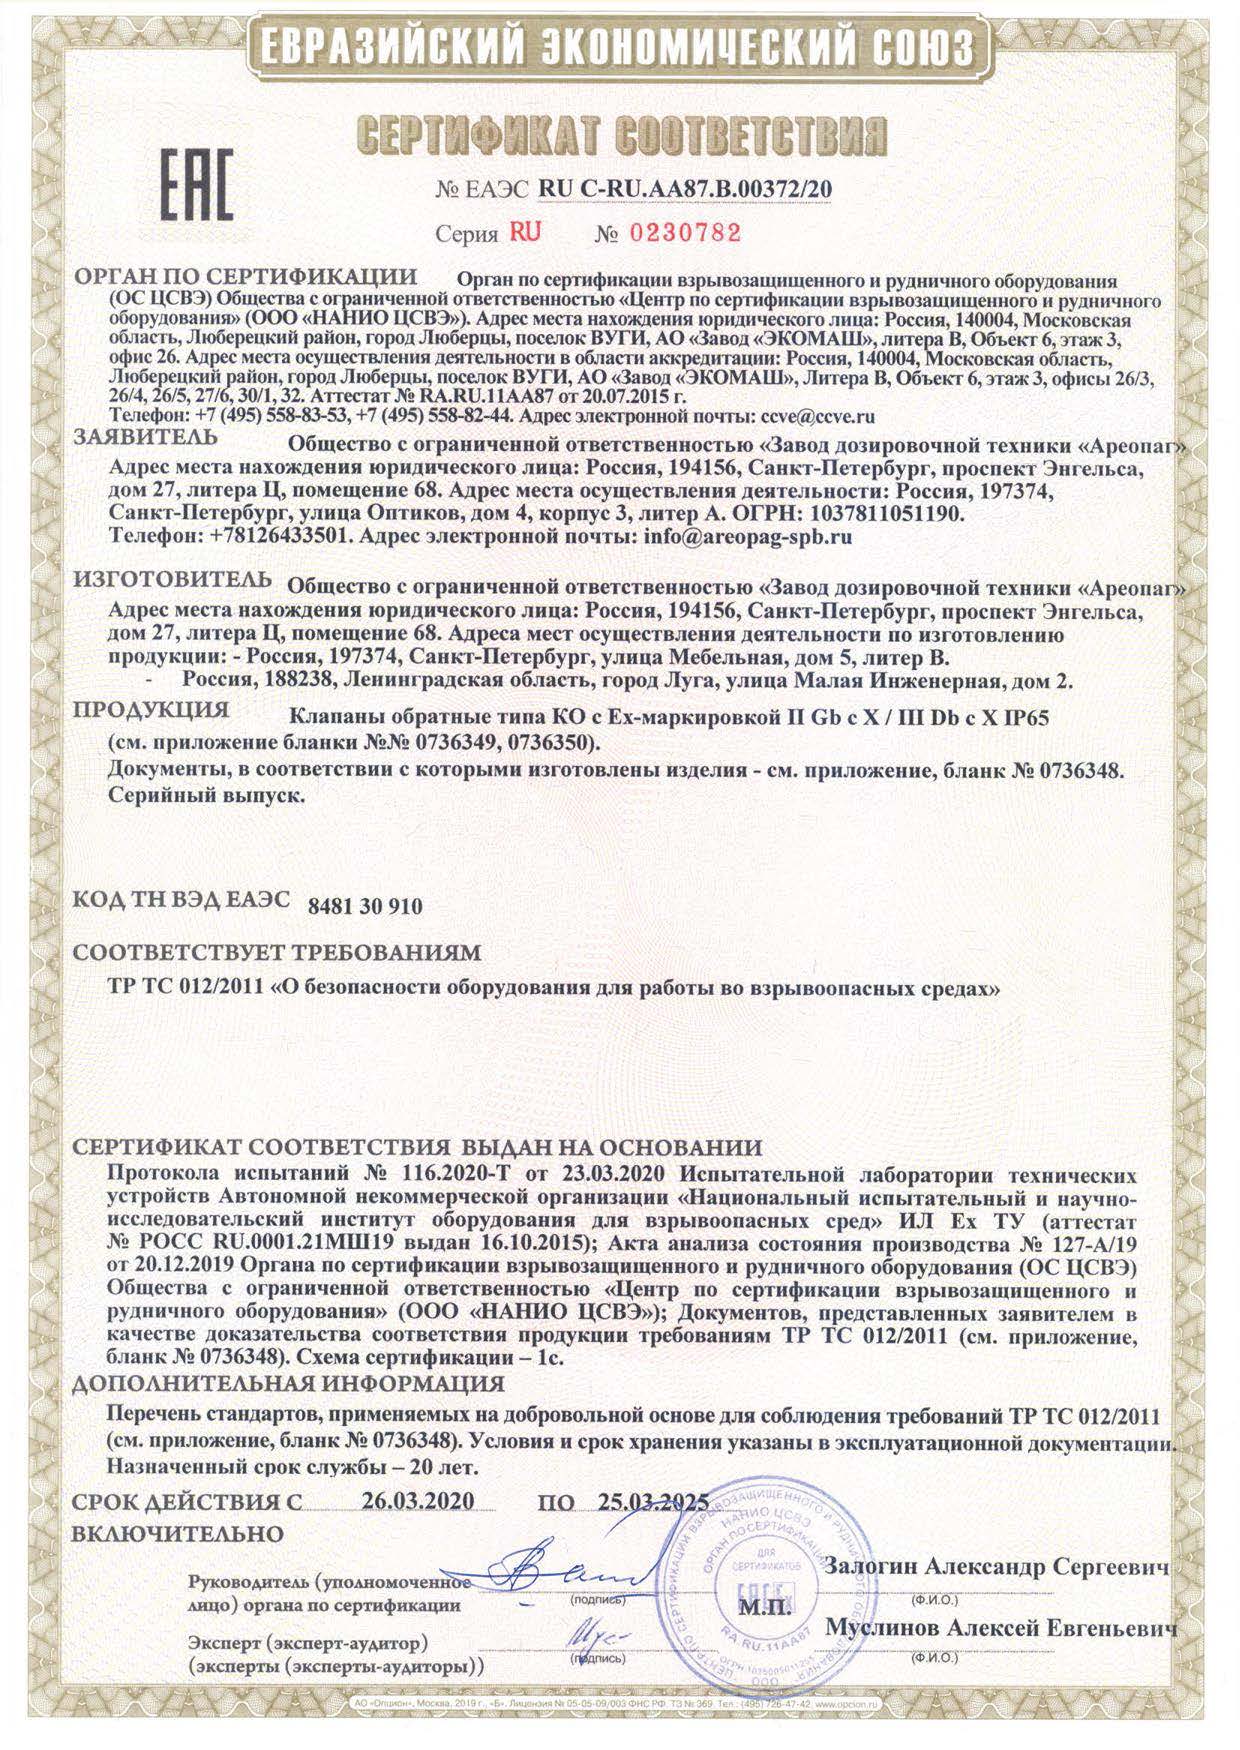 Сертификат соответствия EАЭС RU C-RU.АА87.В.00372/20 серия RU № 0230782 на клапаны обратный типа КО с маркировкой взрывозащиты